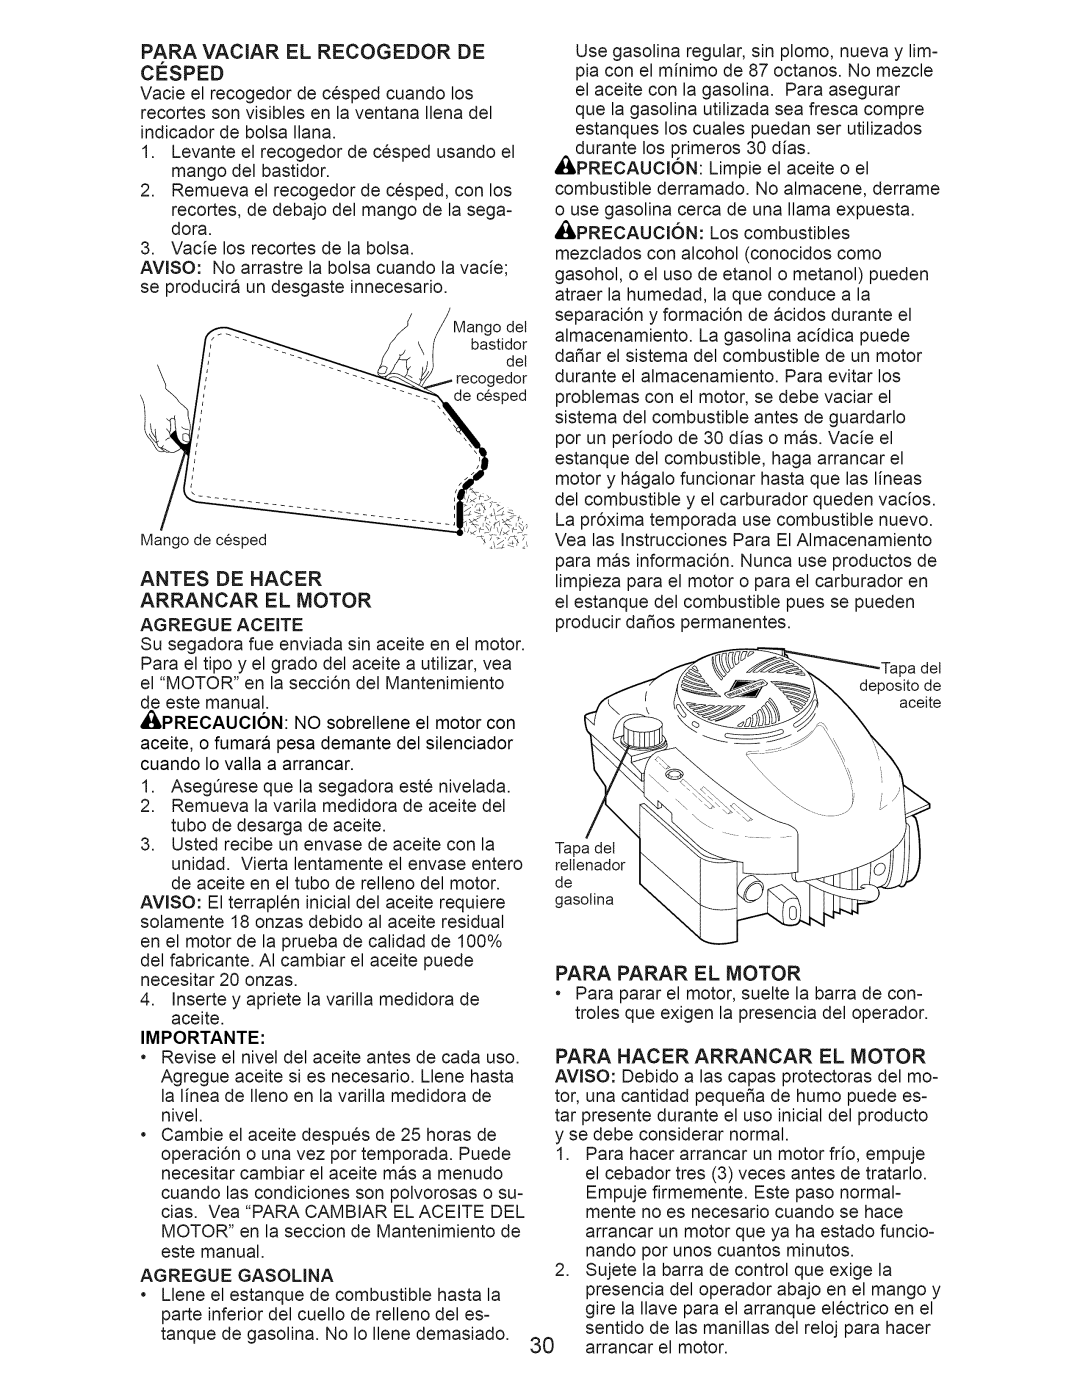 Craftsman 917.374361 owner manual Antes De Hacer Arrancar El Motor, Para Parar El Motor 